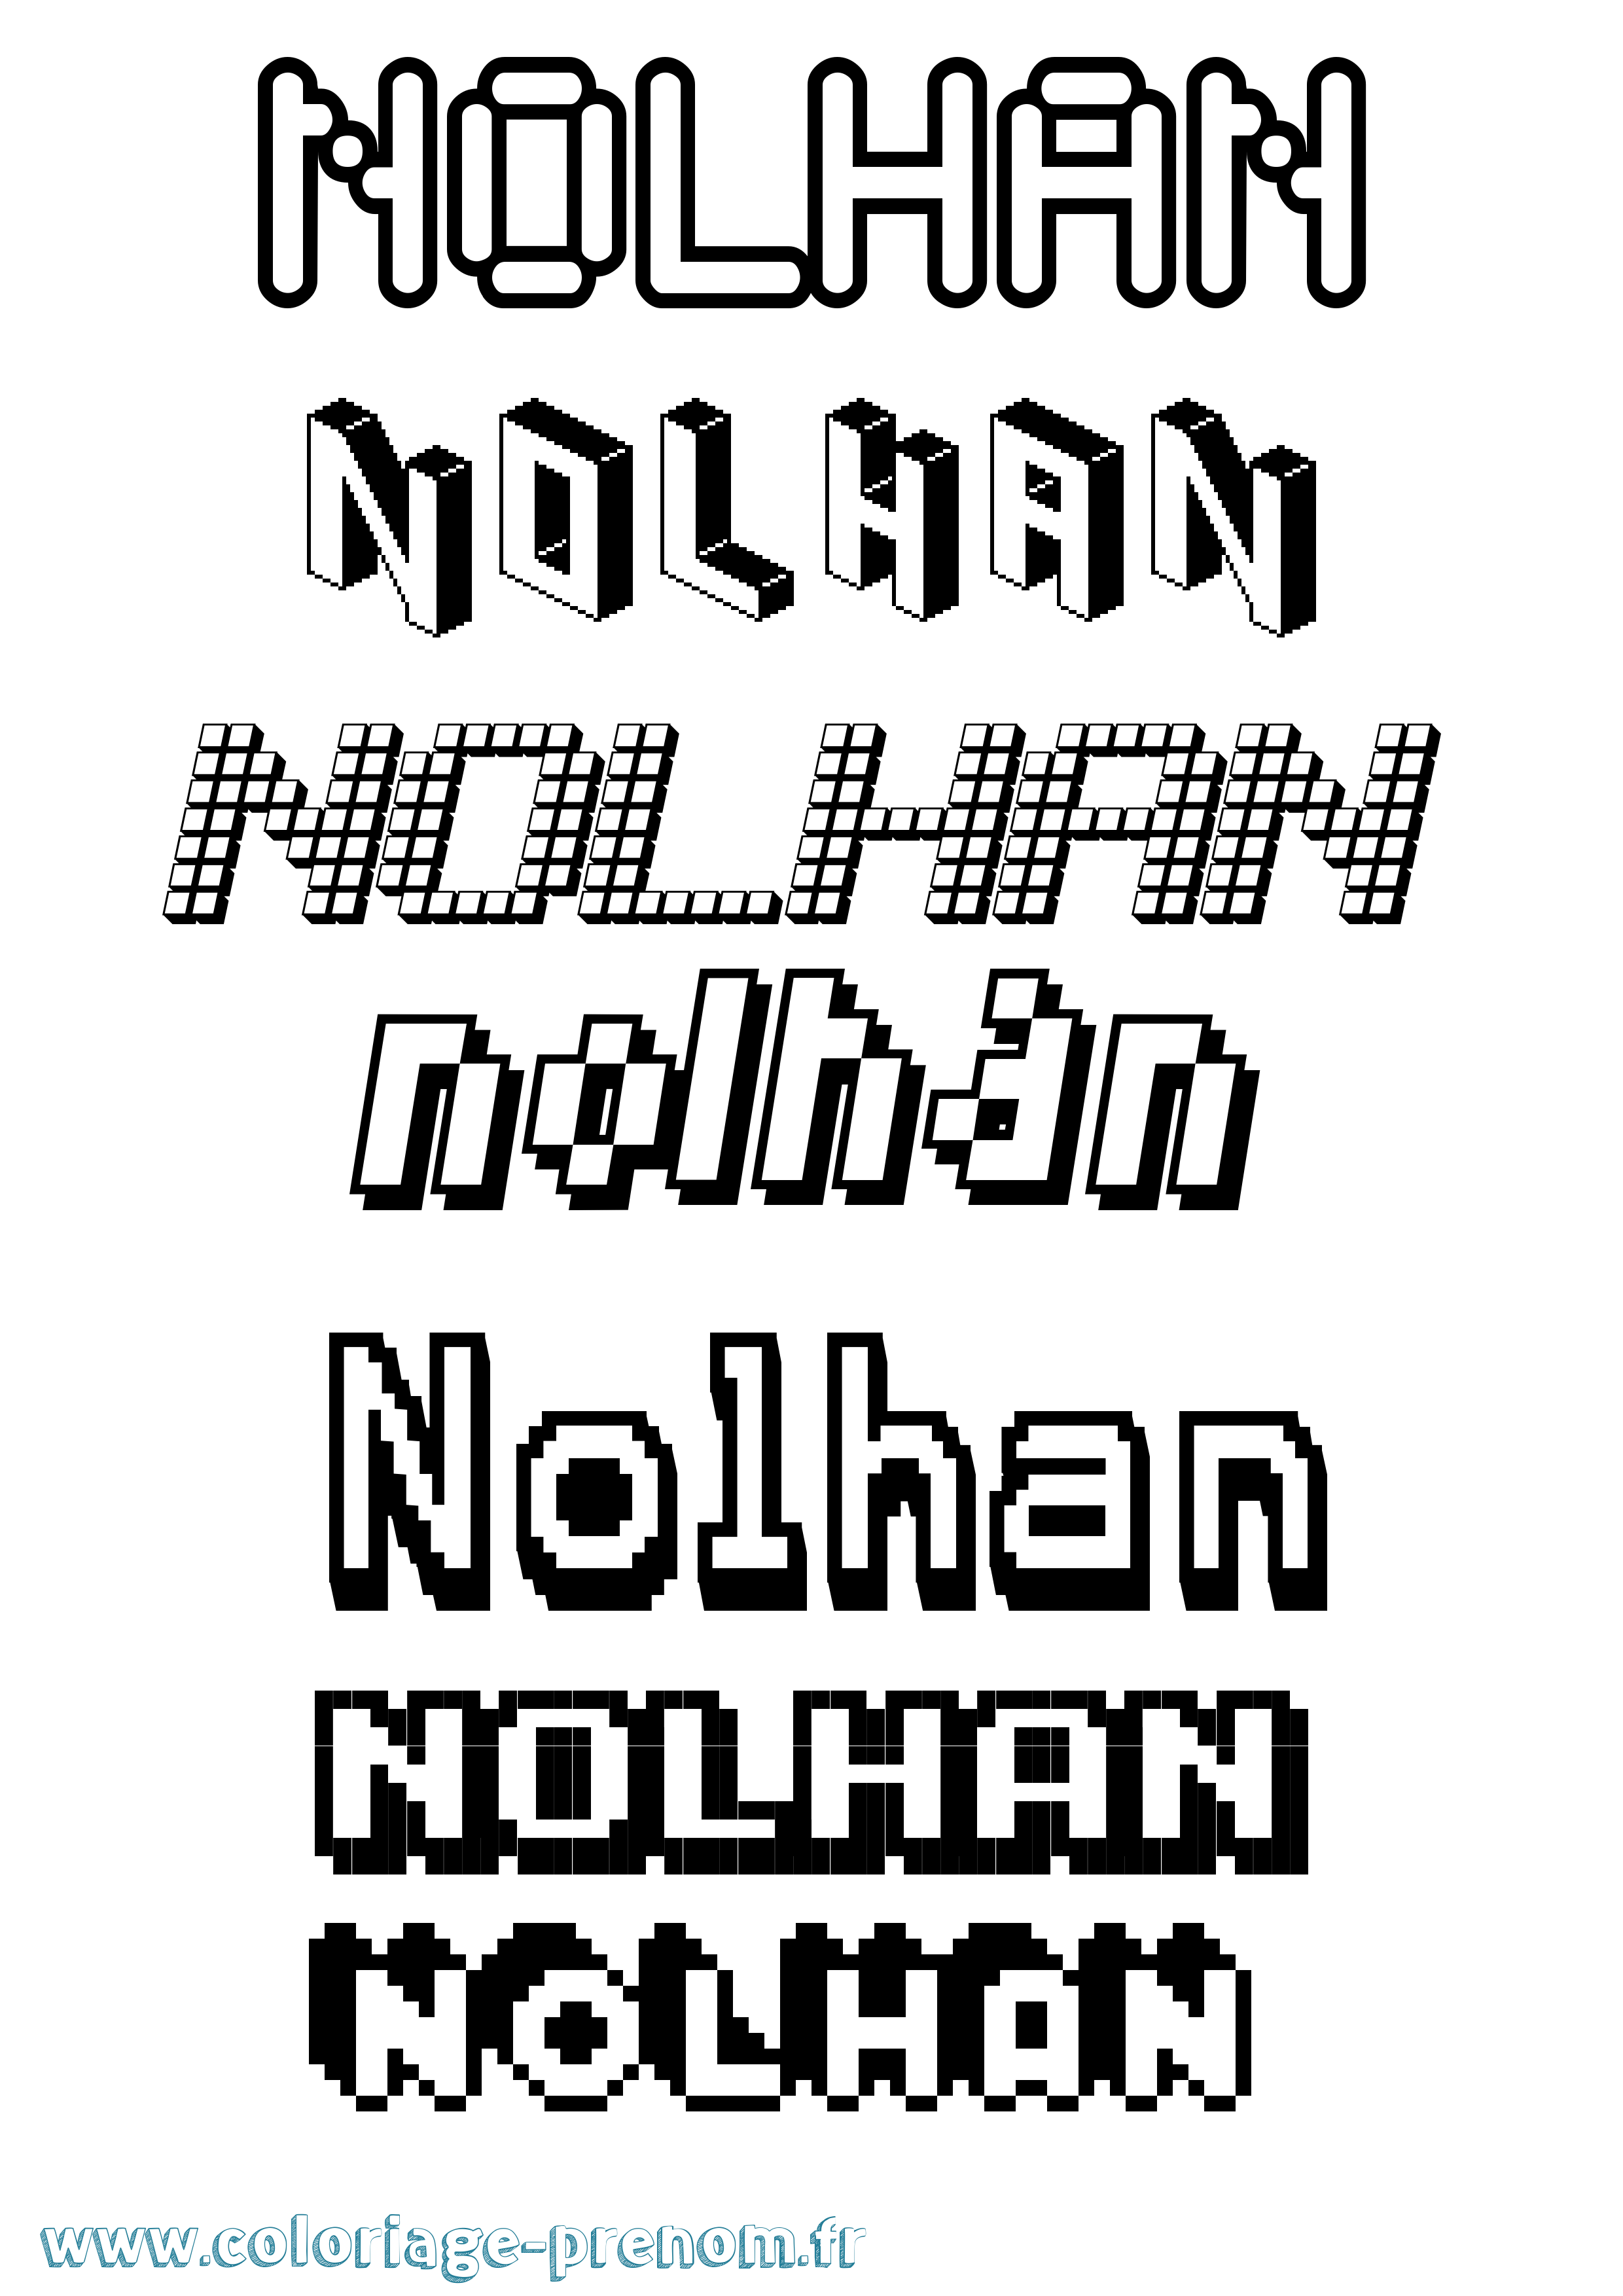 Coloriage prénom Nolhan Pixel